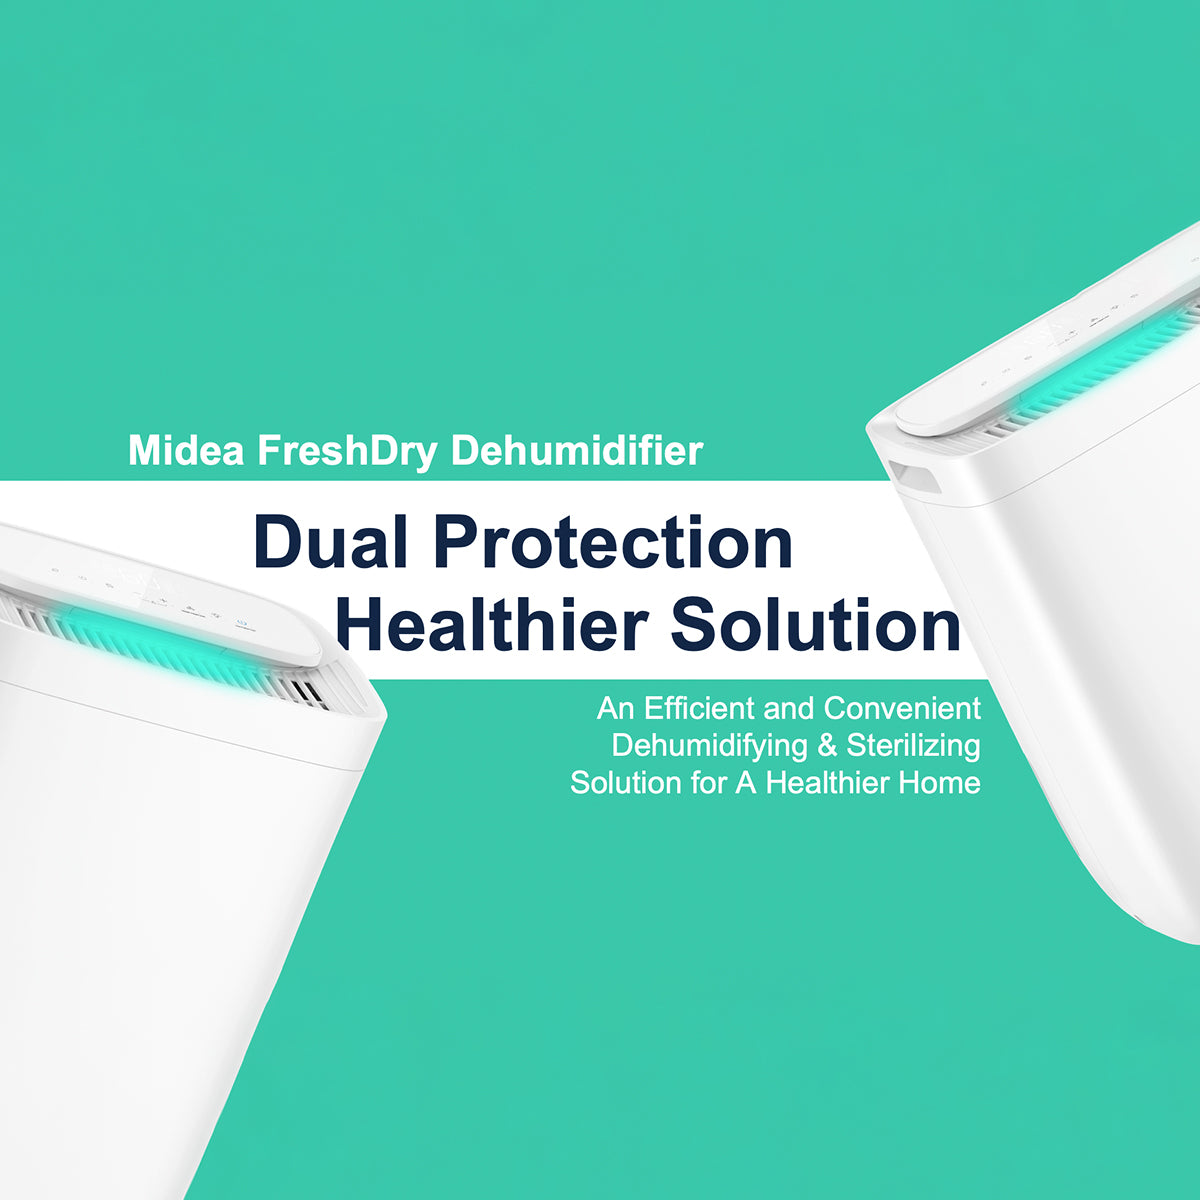 Midea FreshDry Dehumidifier Air Purifier